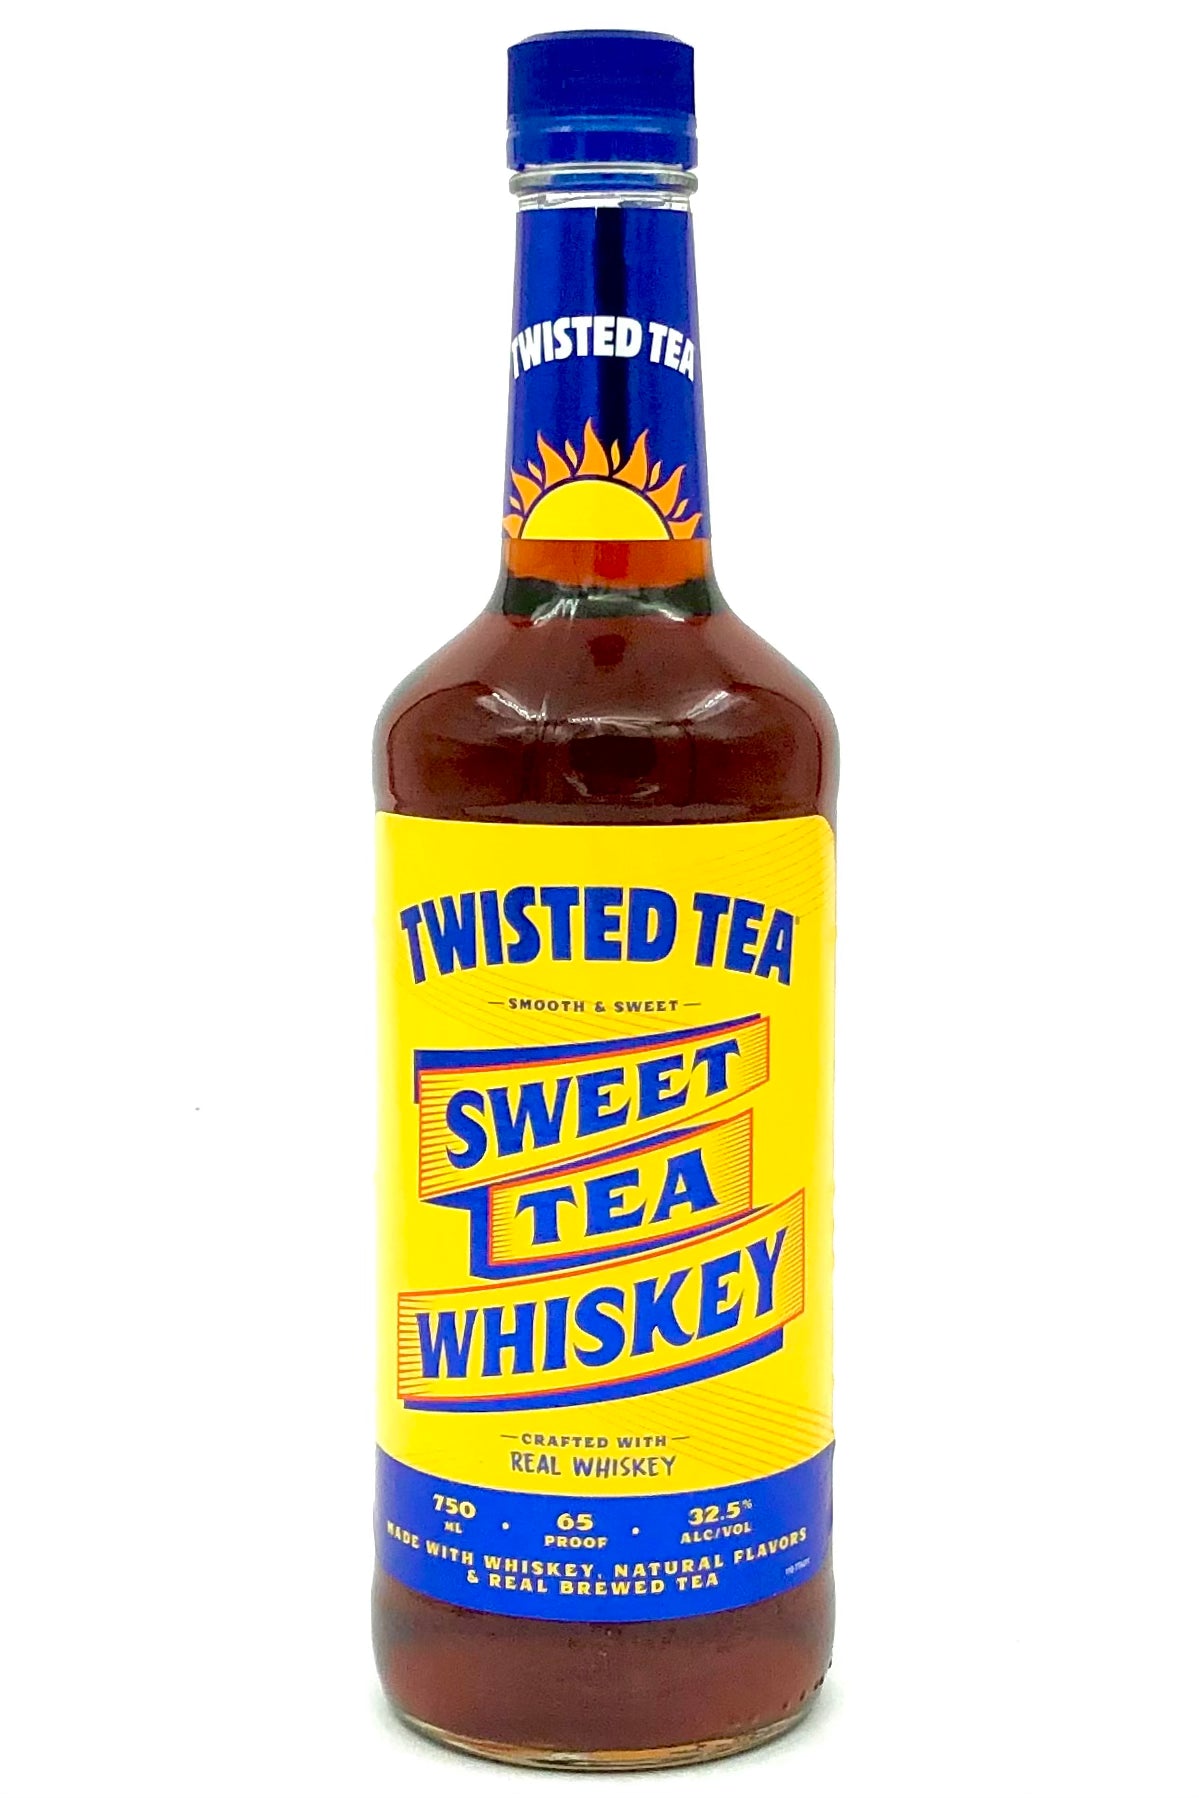 Jim Beam Twisted Tea Sweet Tea Whiskey